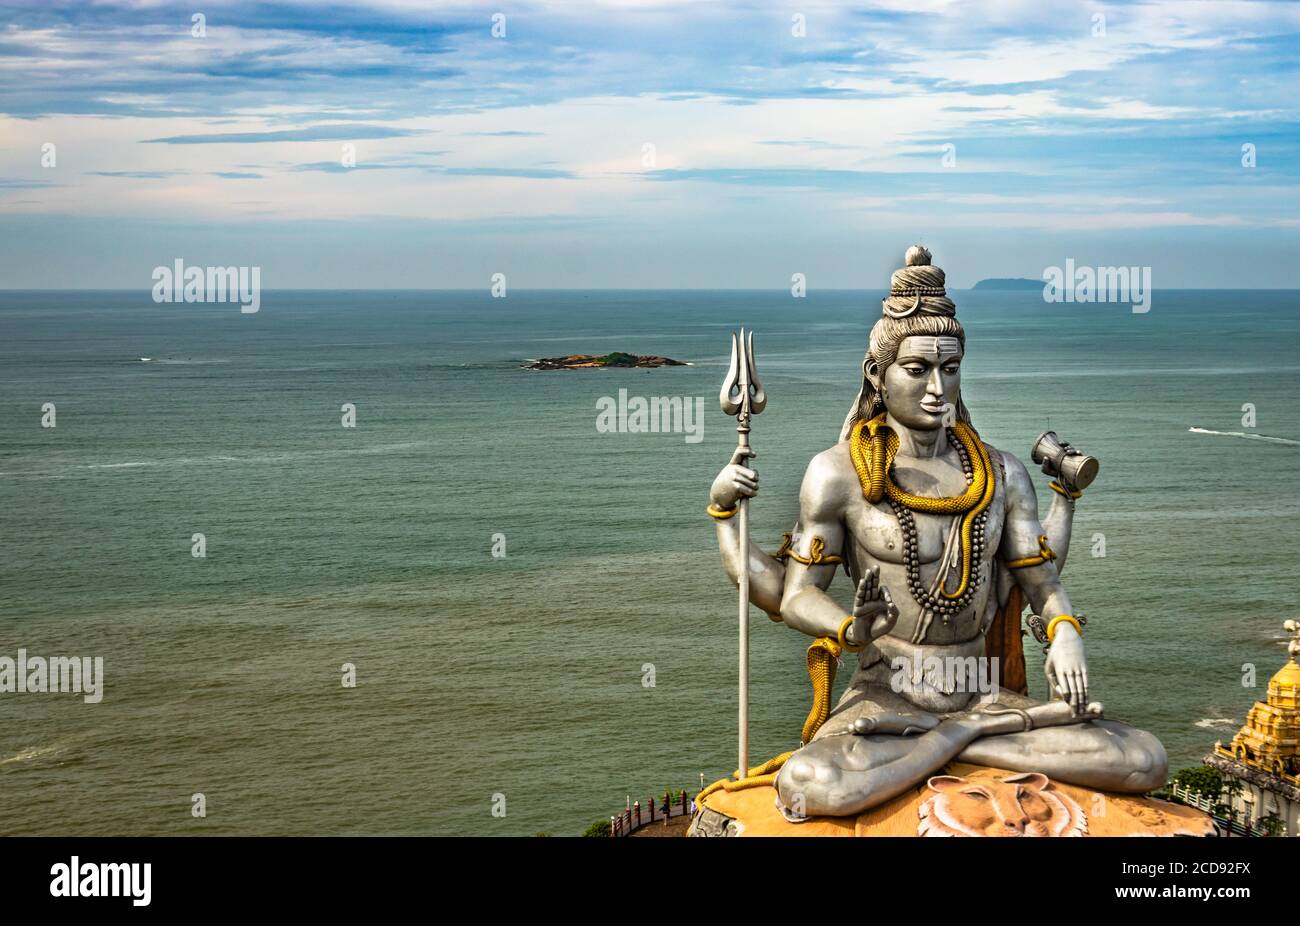 la statua di shiva, isolata al tempio murdeshwar, scatta foto aeree con il mare arabo sullo sfondo, è stata realizzata al murdeshwar karnataka india Foto Stock